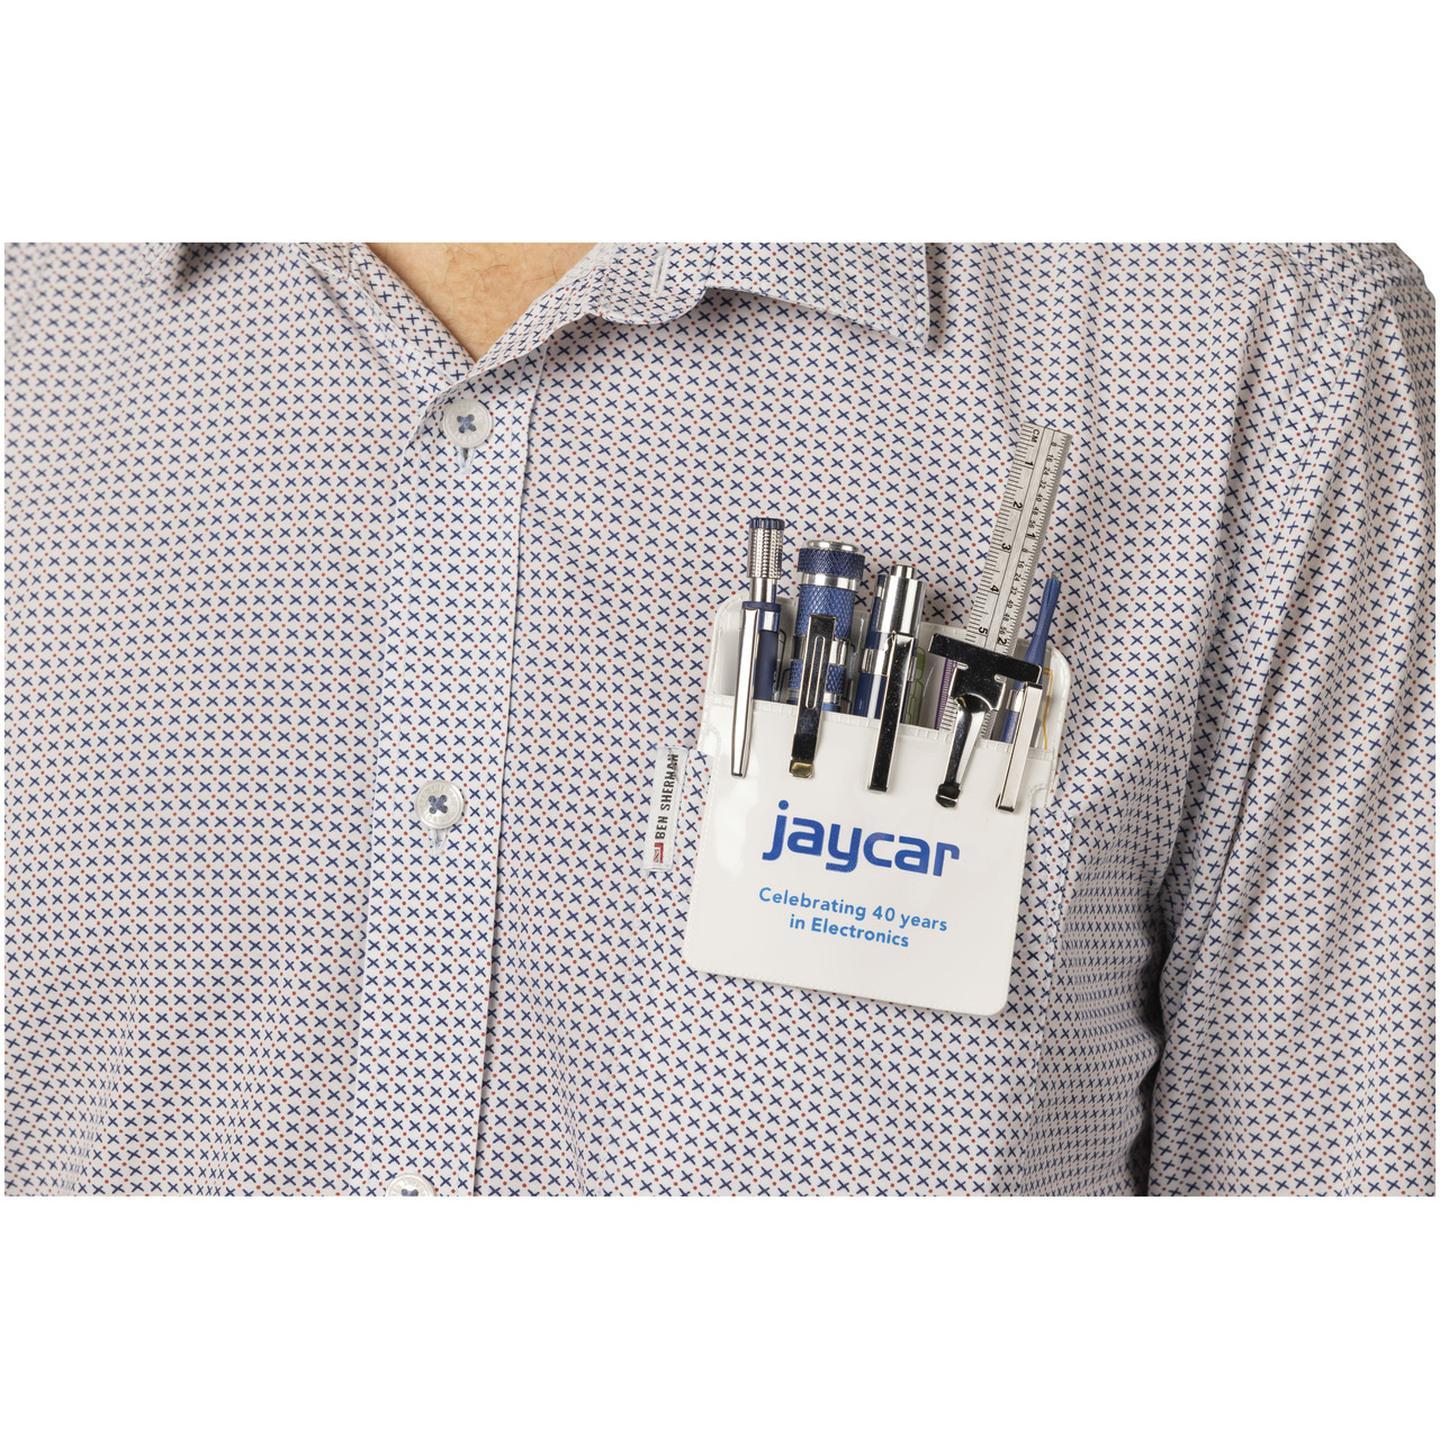 Jaycar Vinyl Pocket Protector